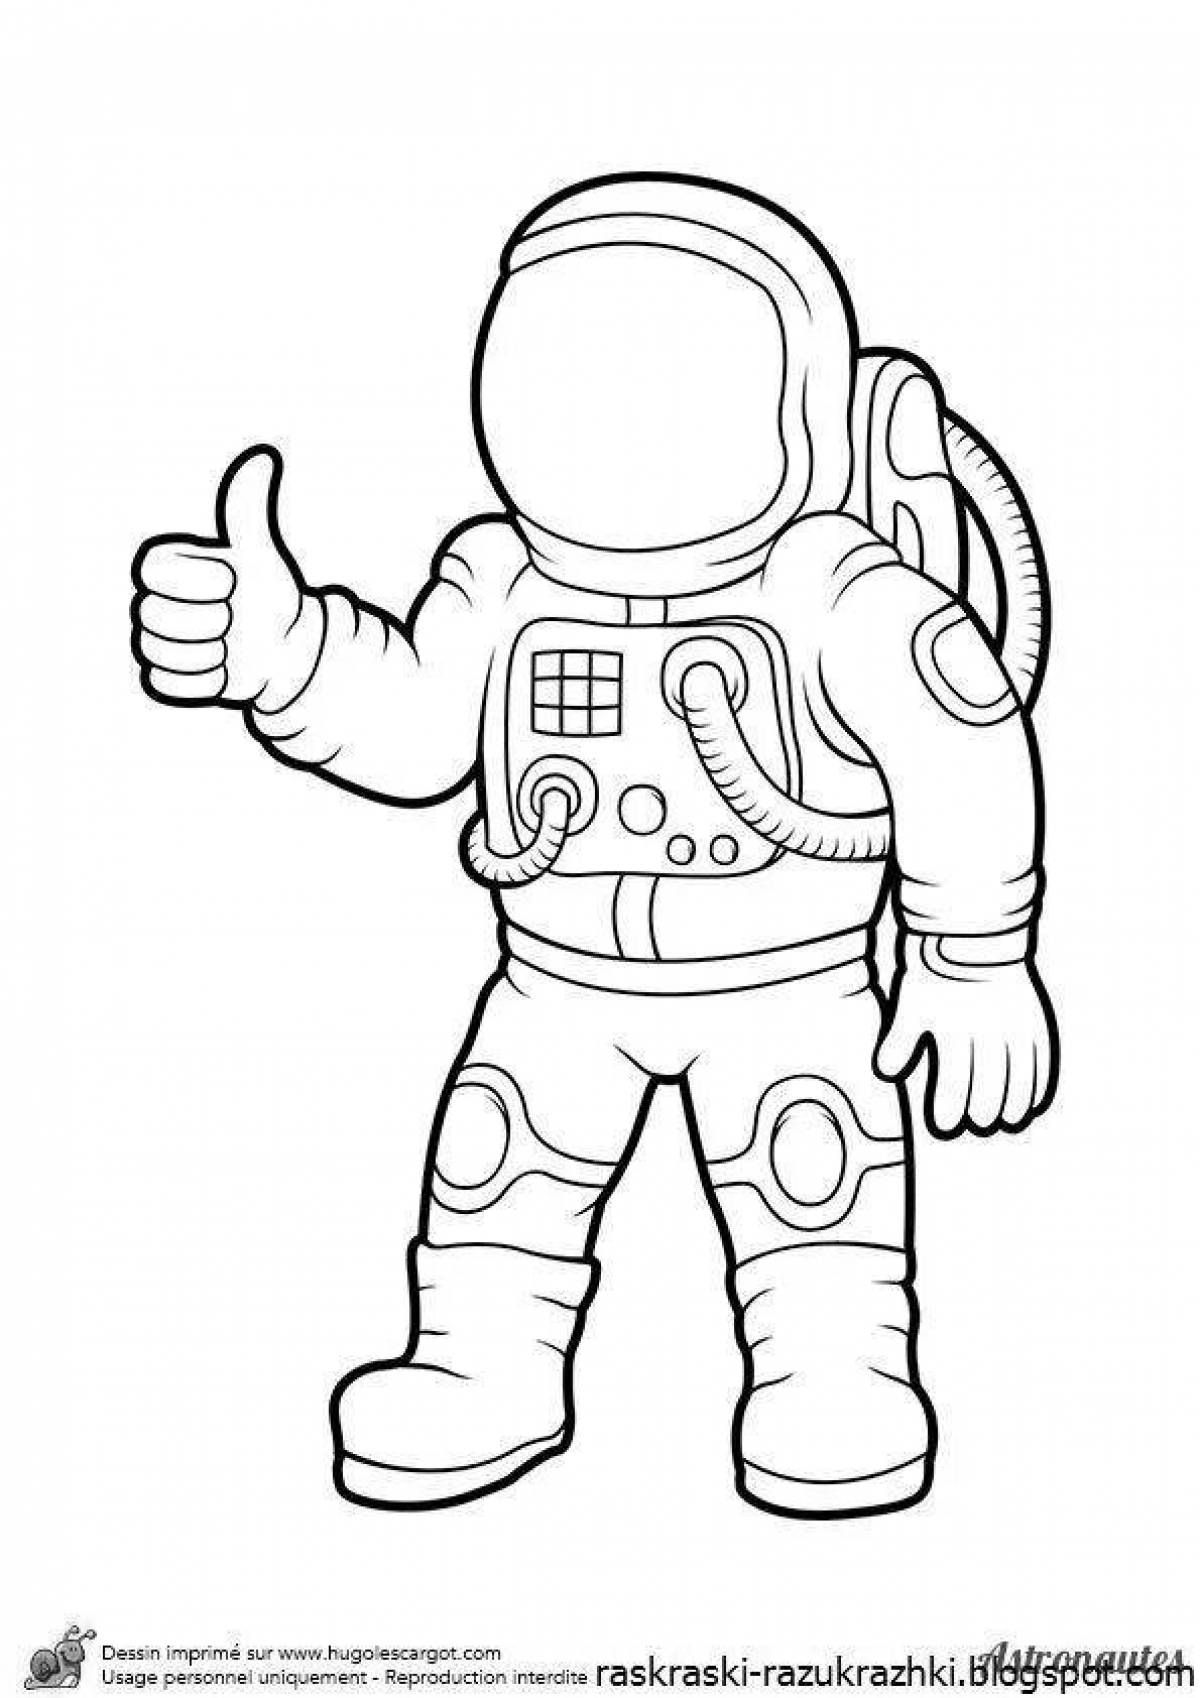 Космонавт шаблон для вырезания распечатать. Раскраска космонавт в скафандре. Космонавт раскраска для детей. Раскраска Космонавта в скафандре для детей. Космонавт раскраска для малышей.